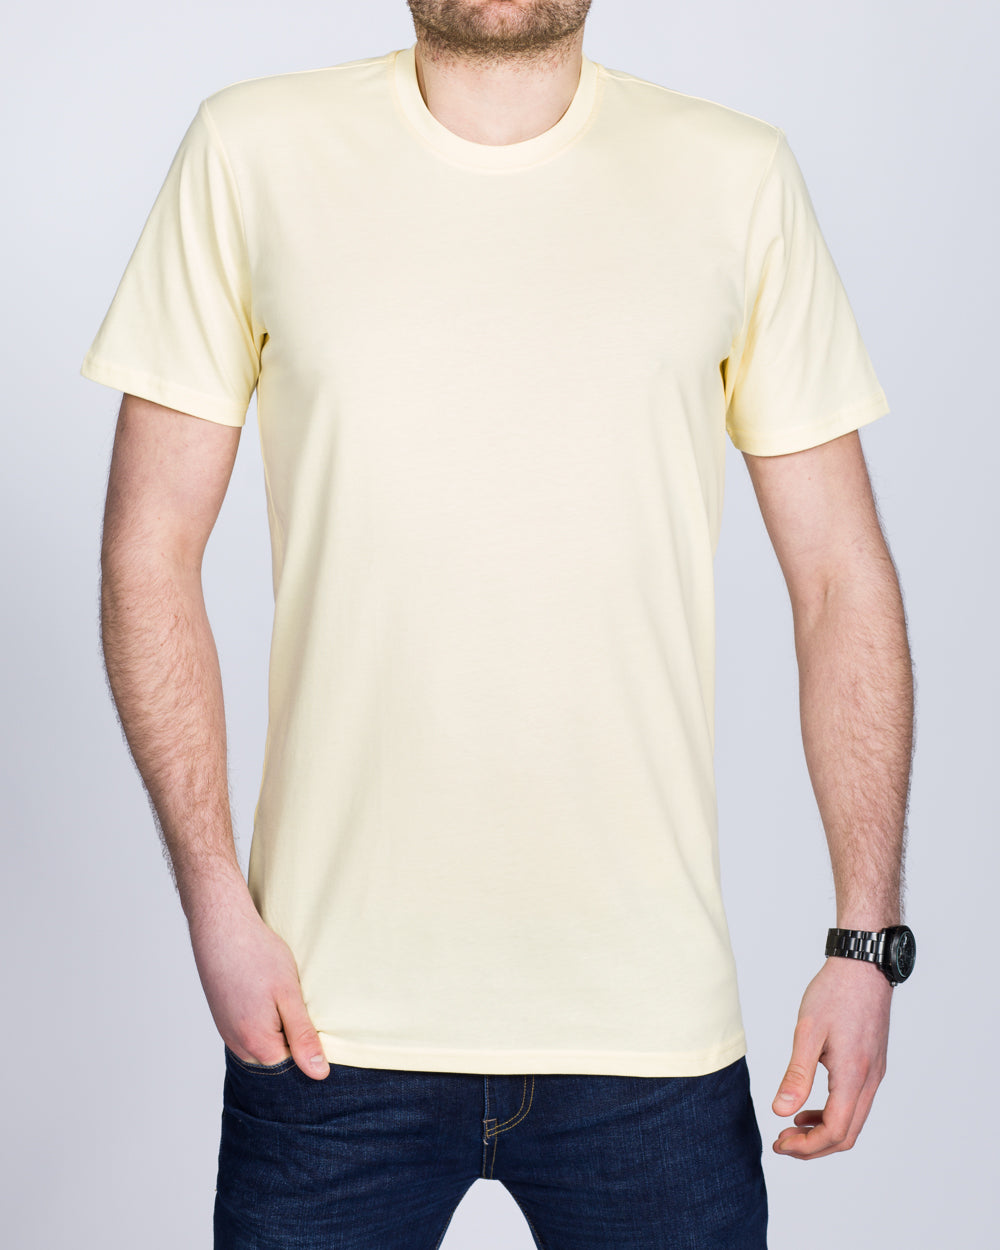 Girav Sydney Tall T-Shirt (light yellow)